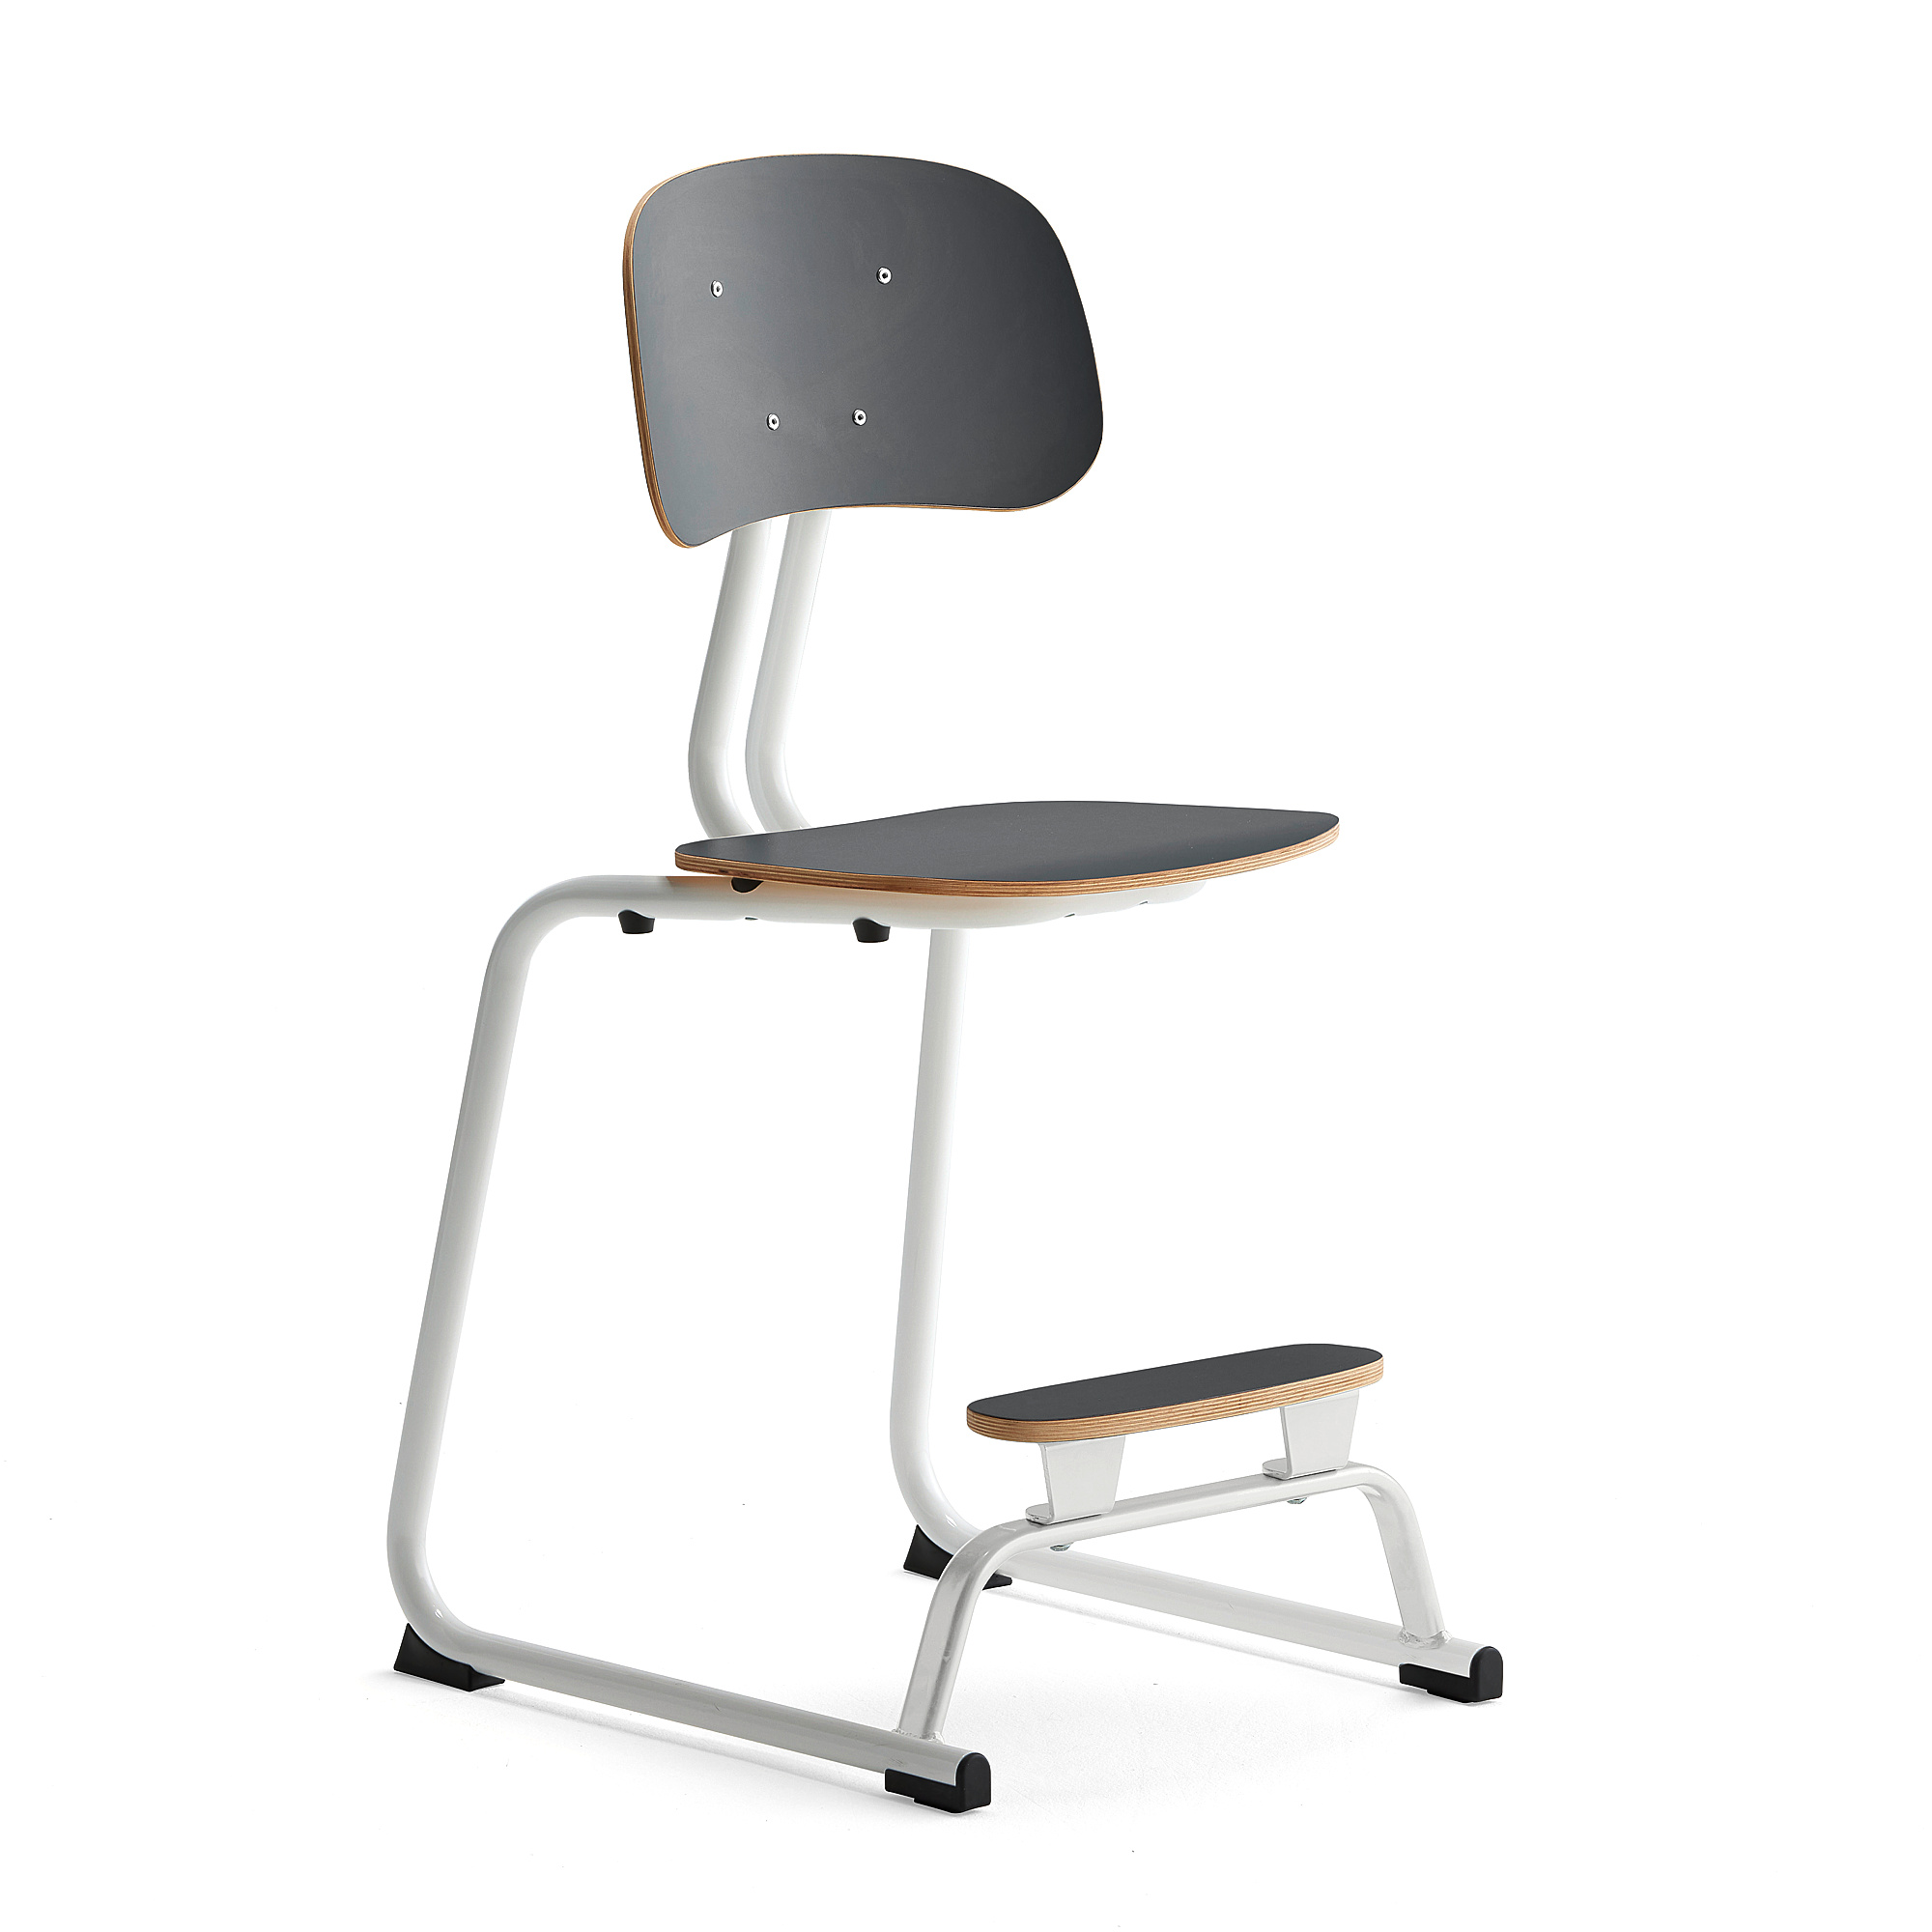 Školní židle YNGVE, ližinová podnož, výška 520 mm, bílá/antracitově šedá